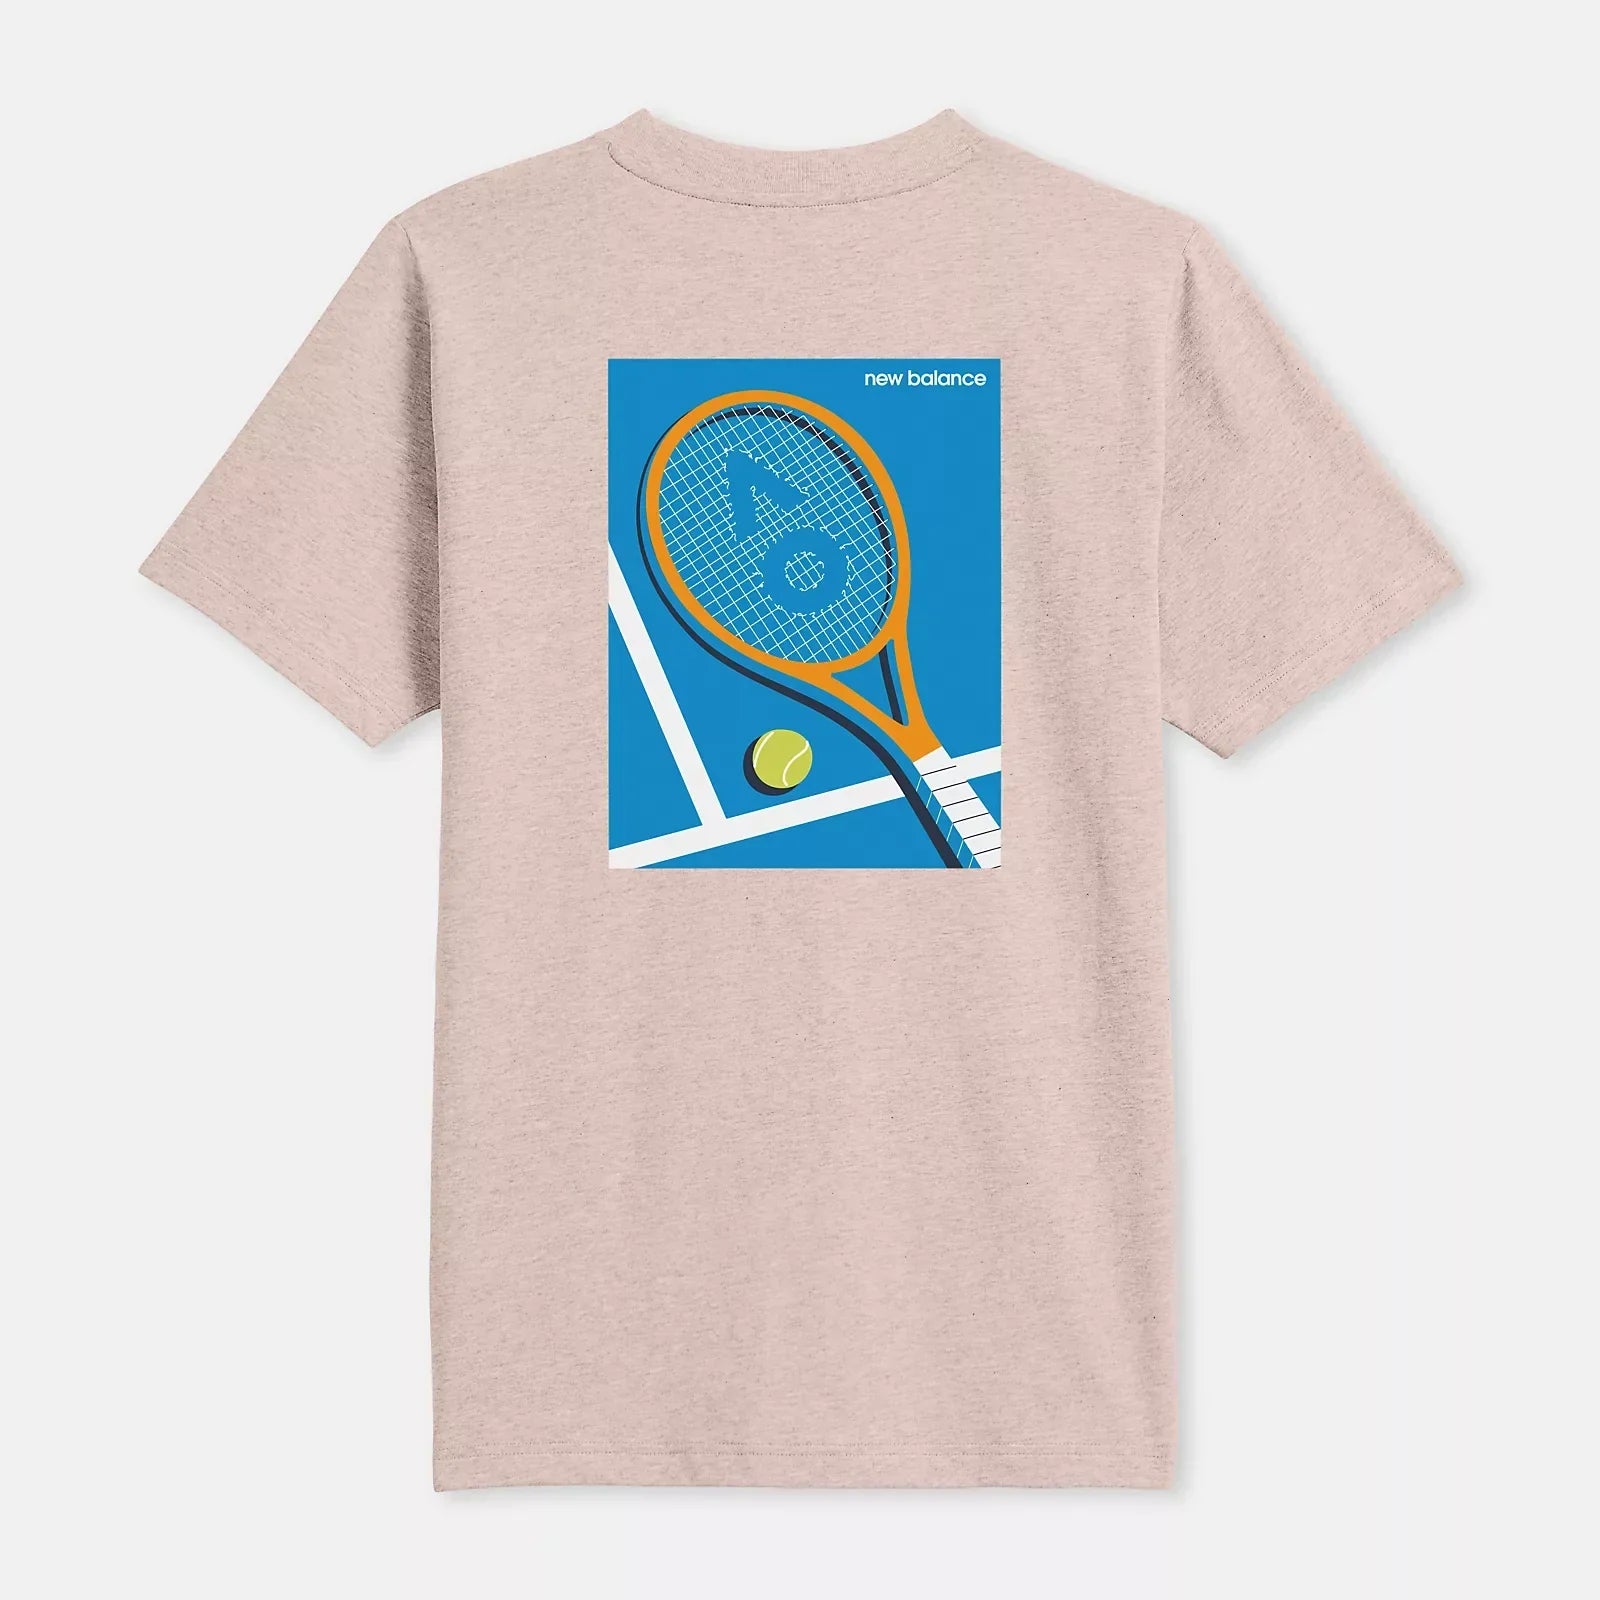 New Balance Women's Pink T-Shirt with Tennis Racquet Back Print